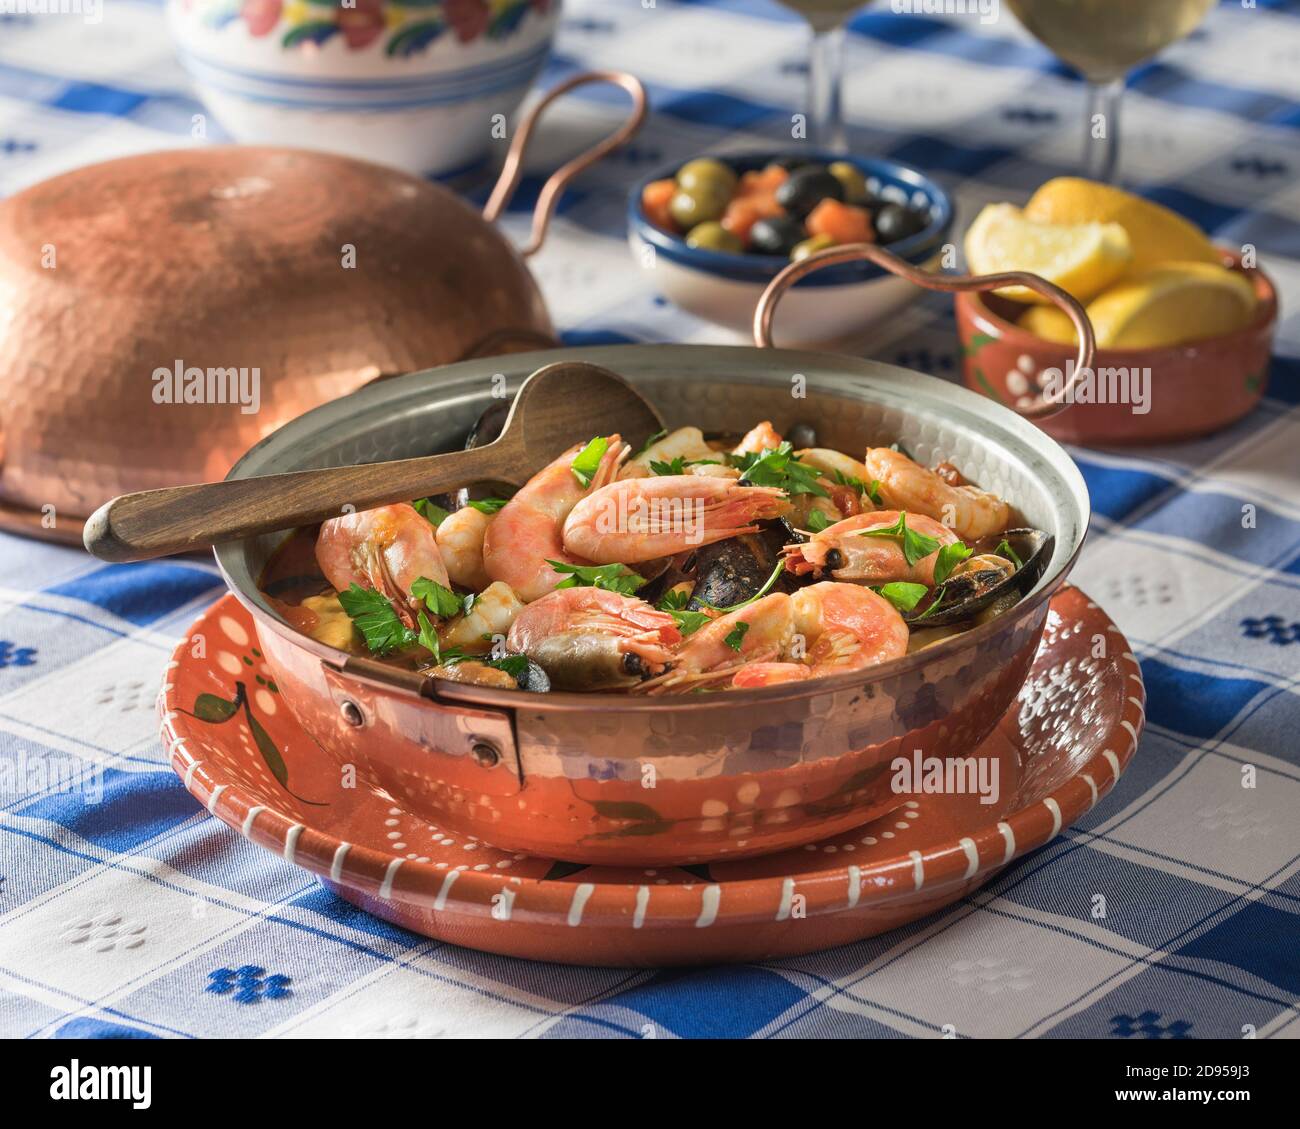 Cataplana de mariscos. Seafood casserole. Food Portugal Stock Photo - Alamy